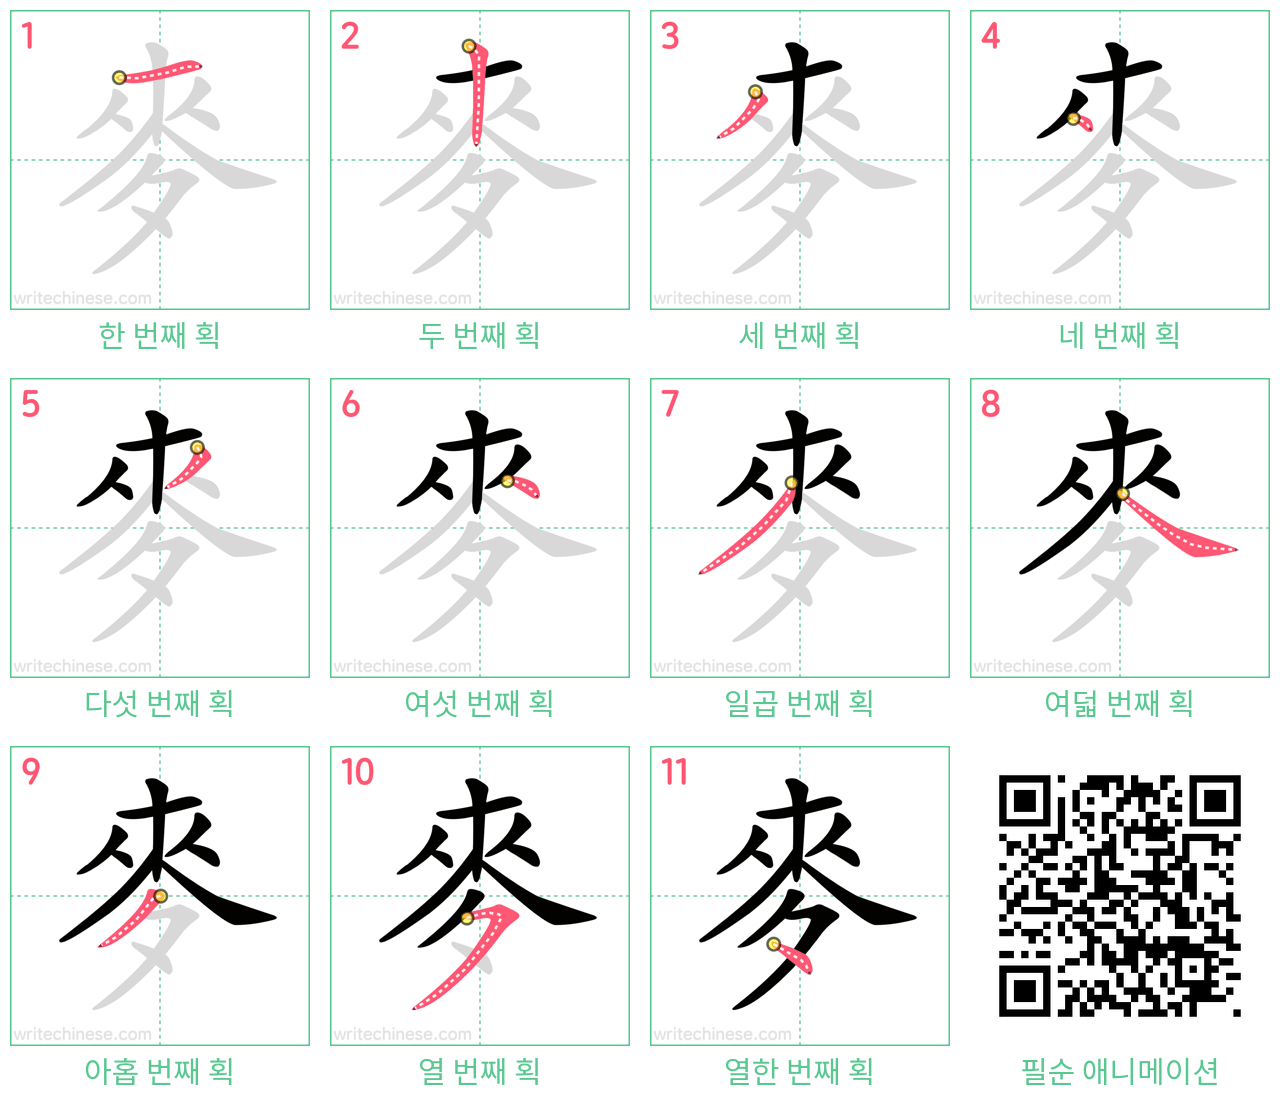 麥 step-by-step stroke order diagrams